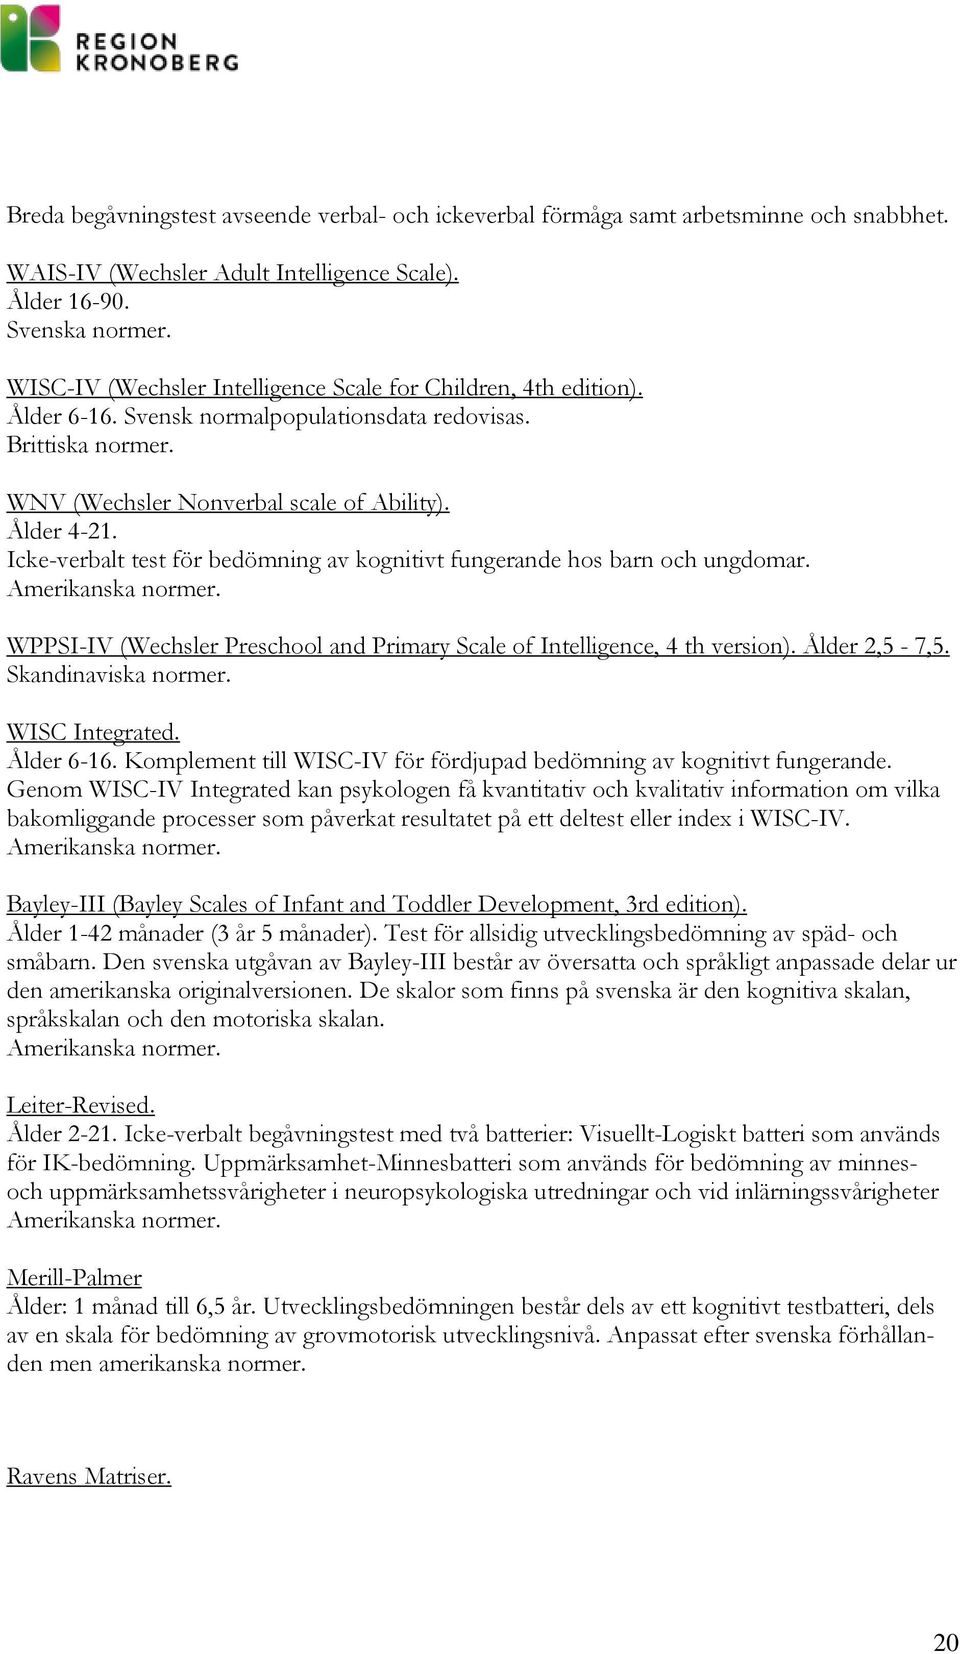 Icke-verbalt test för bedömning av kognitivt fungerande hos barn och ungdomar. Amerikanska normer. WPPSI-IV (Wechsler Preschool and Primary Scale of Intelligence, 4 th version). Ålder 2,5-7,5.